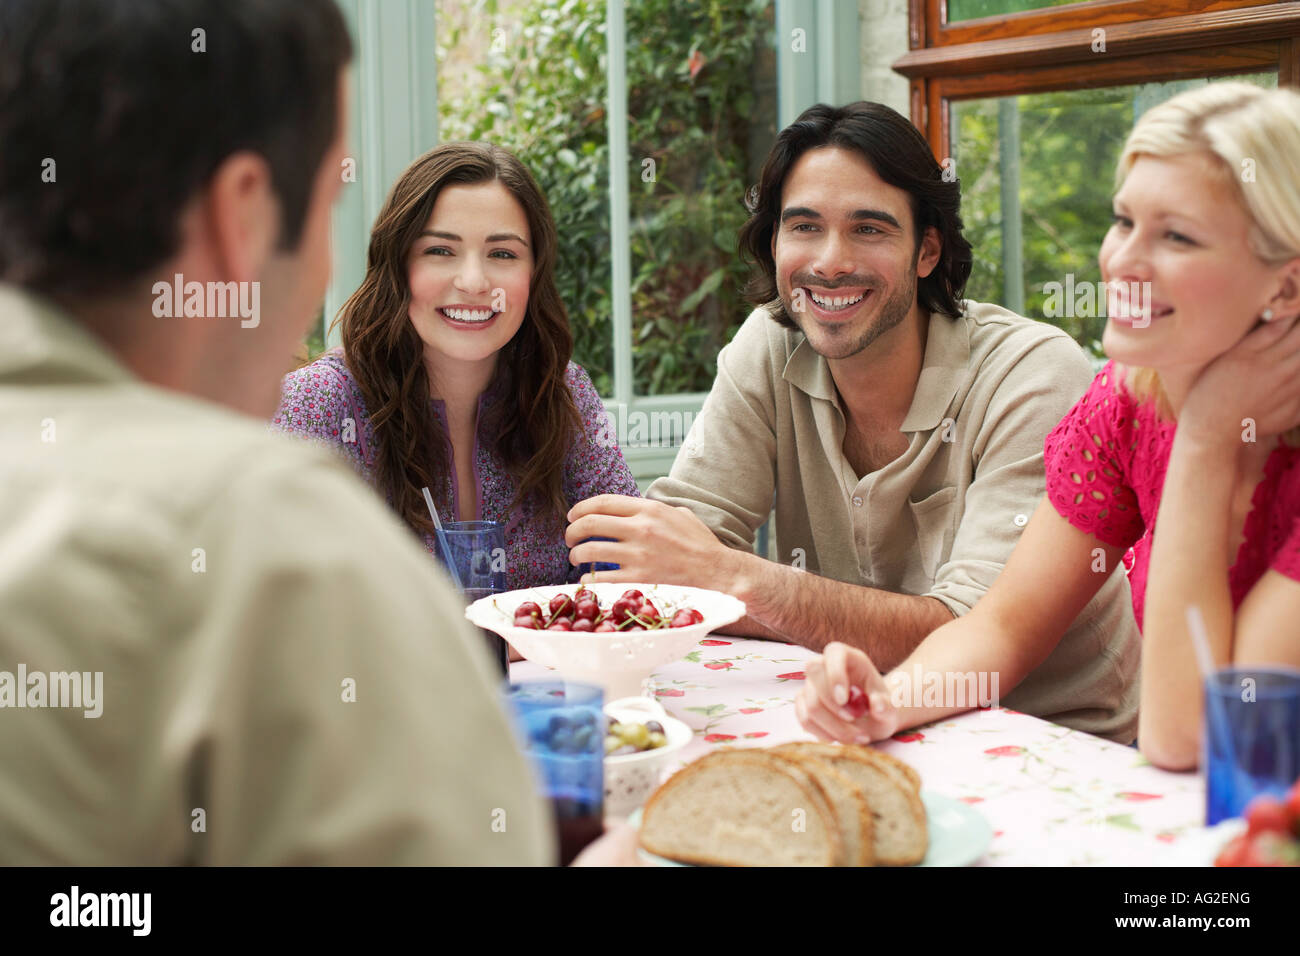 Un gruppo di giovani seduti al tavolo della veranda, ridendo Foto Stock